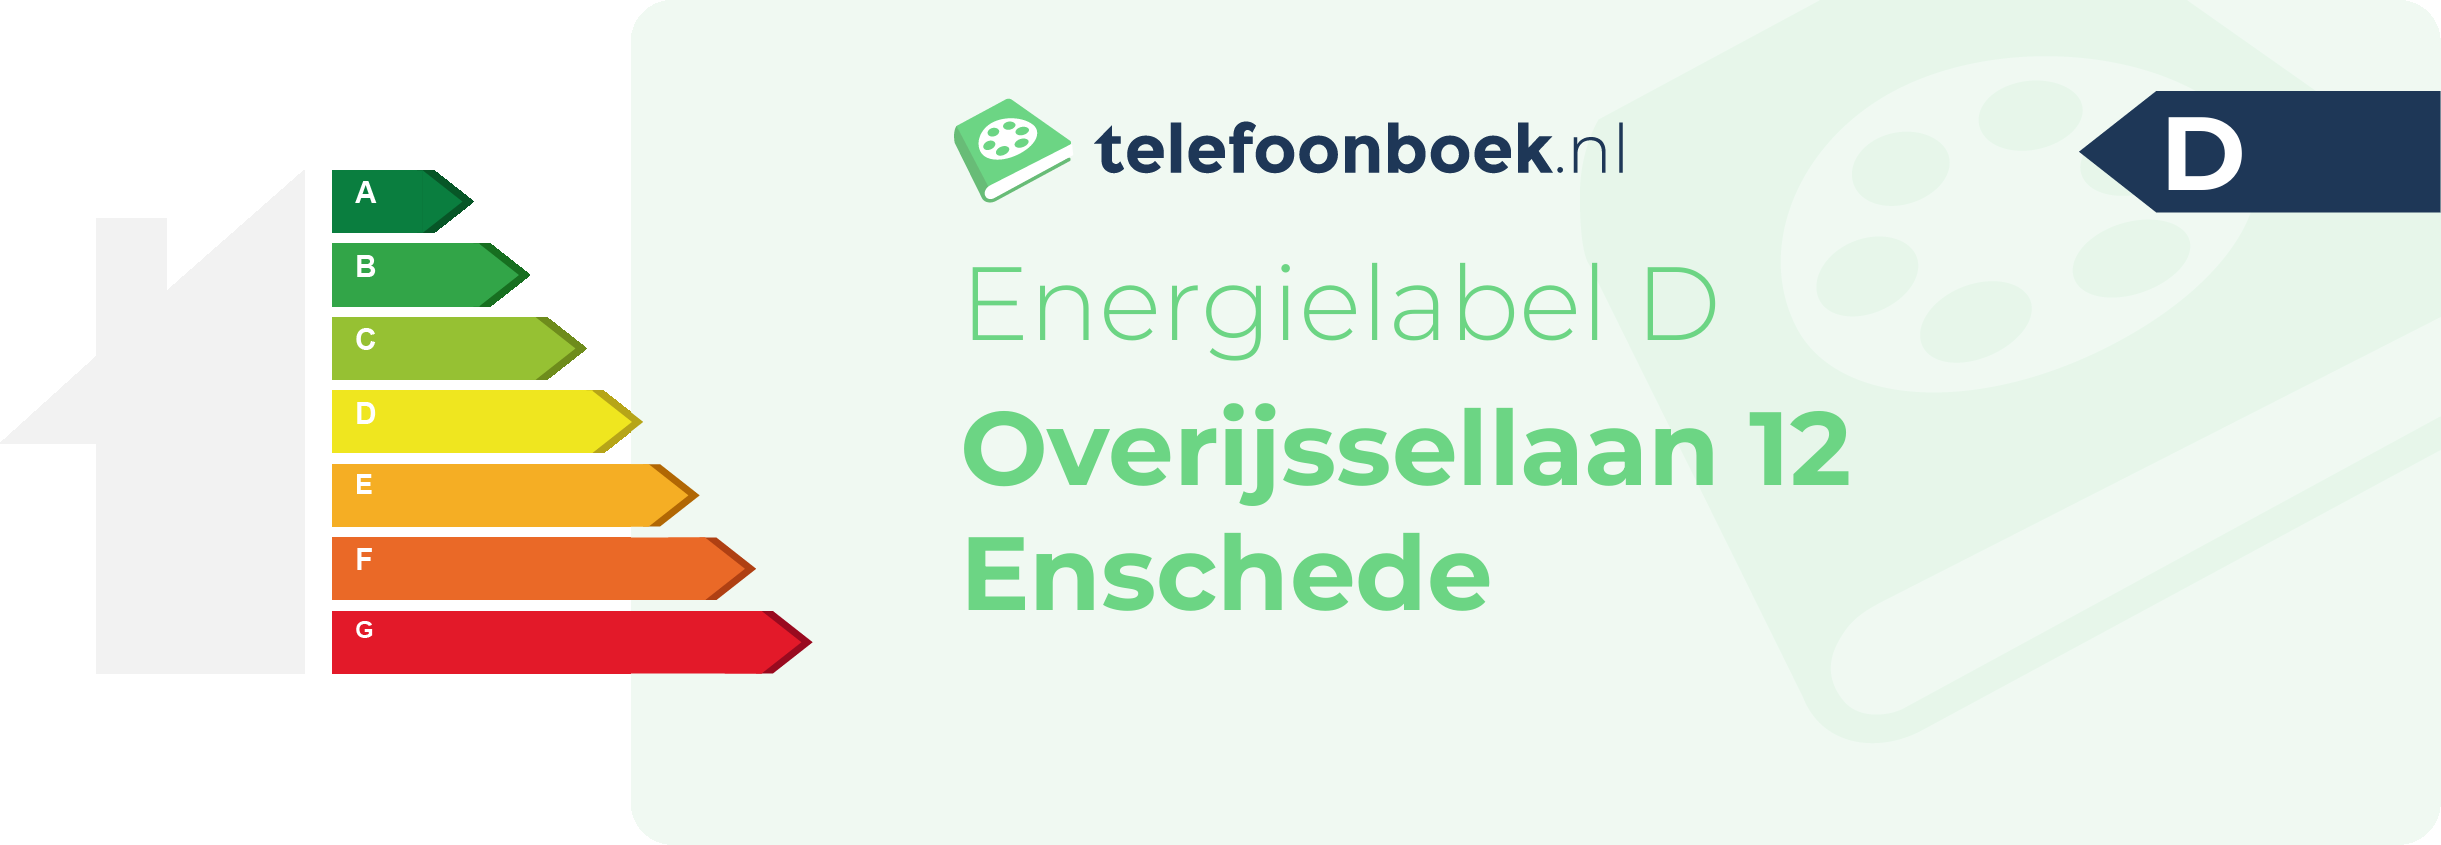 Energielabel Overijssellaan 12 Enschede